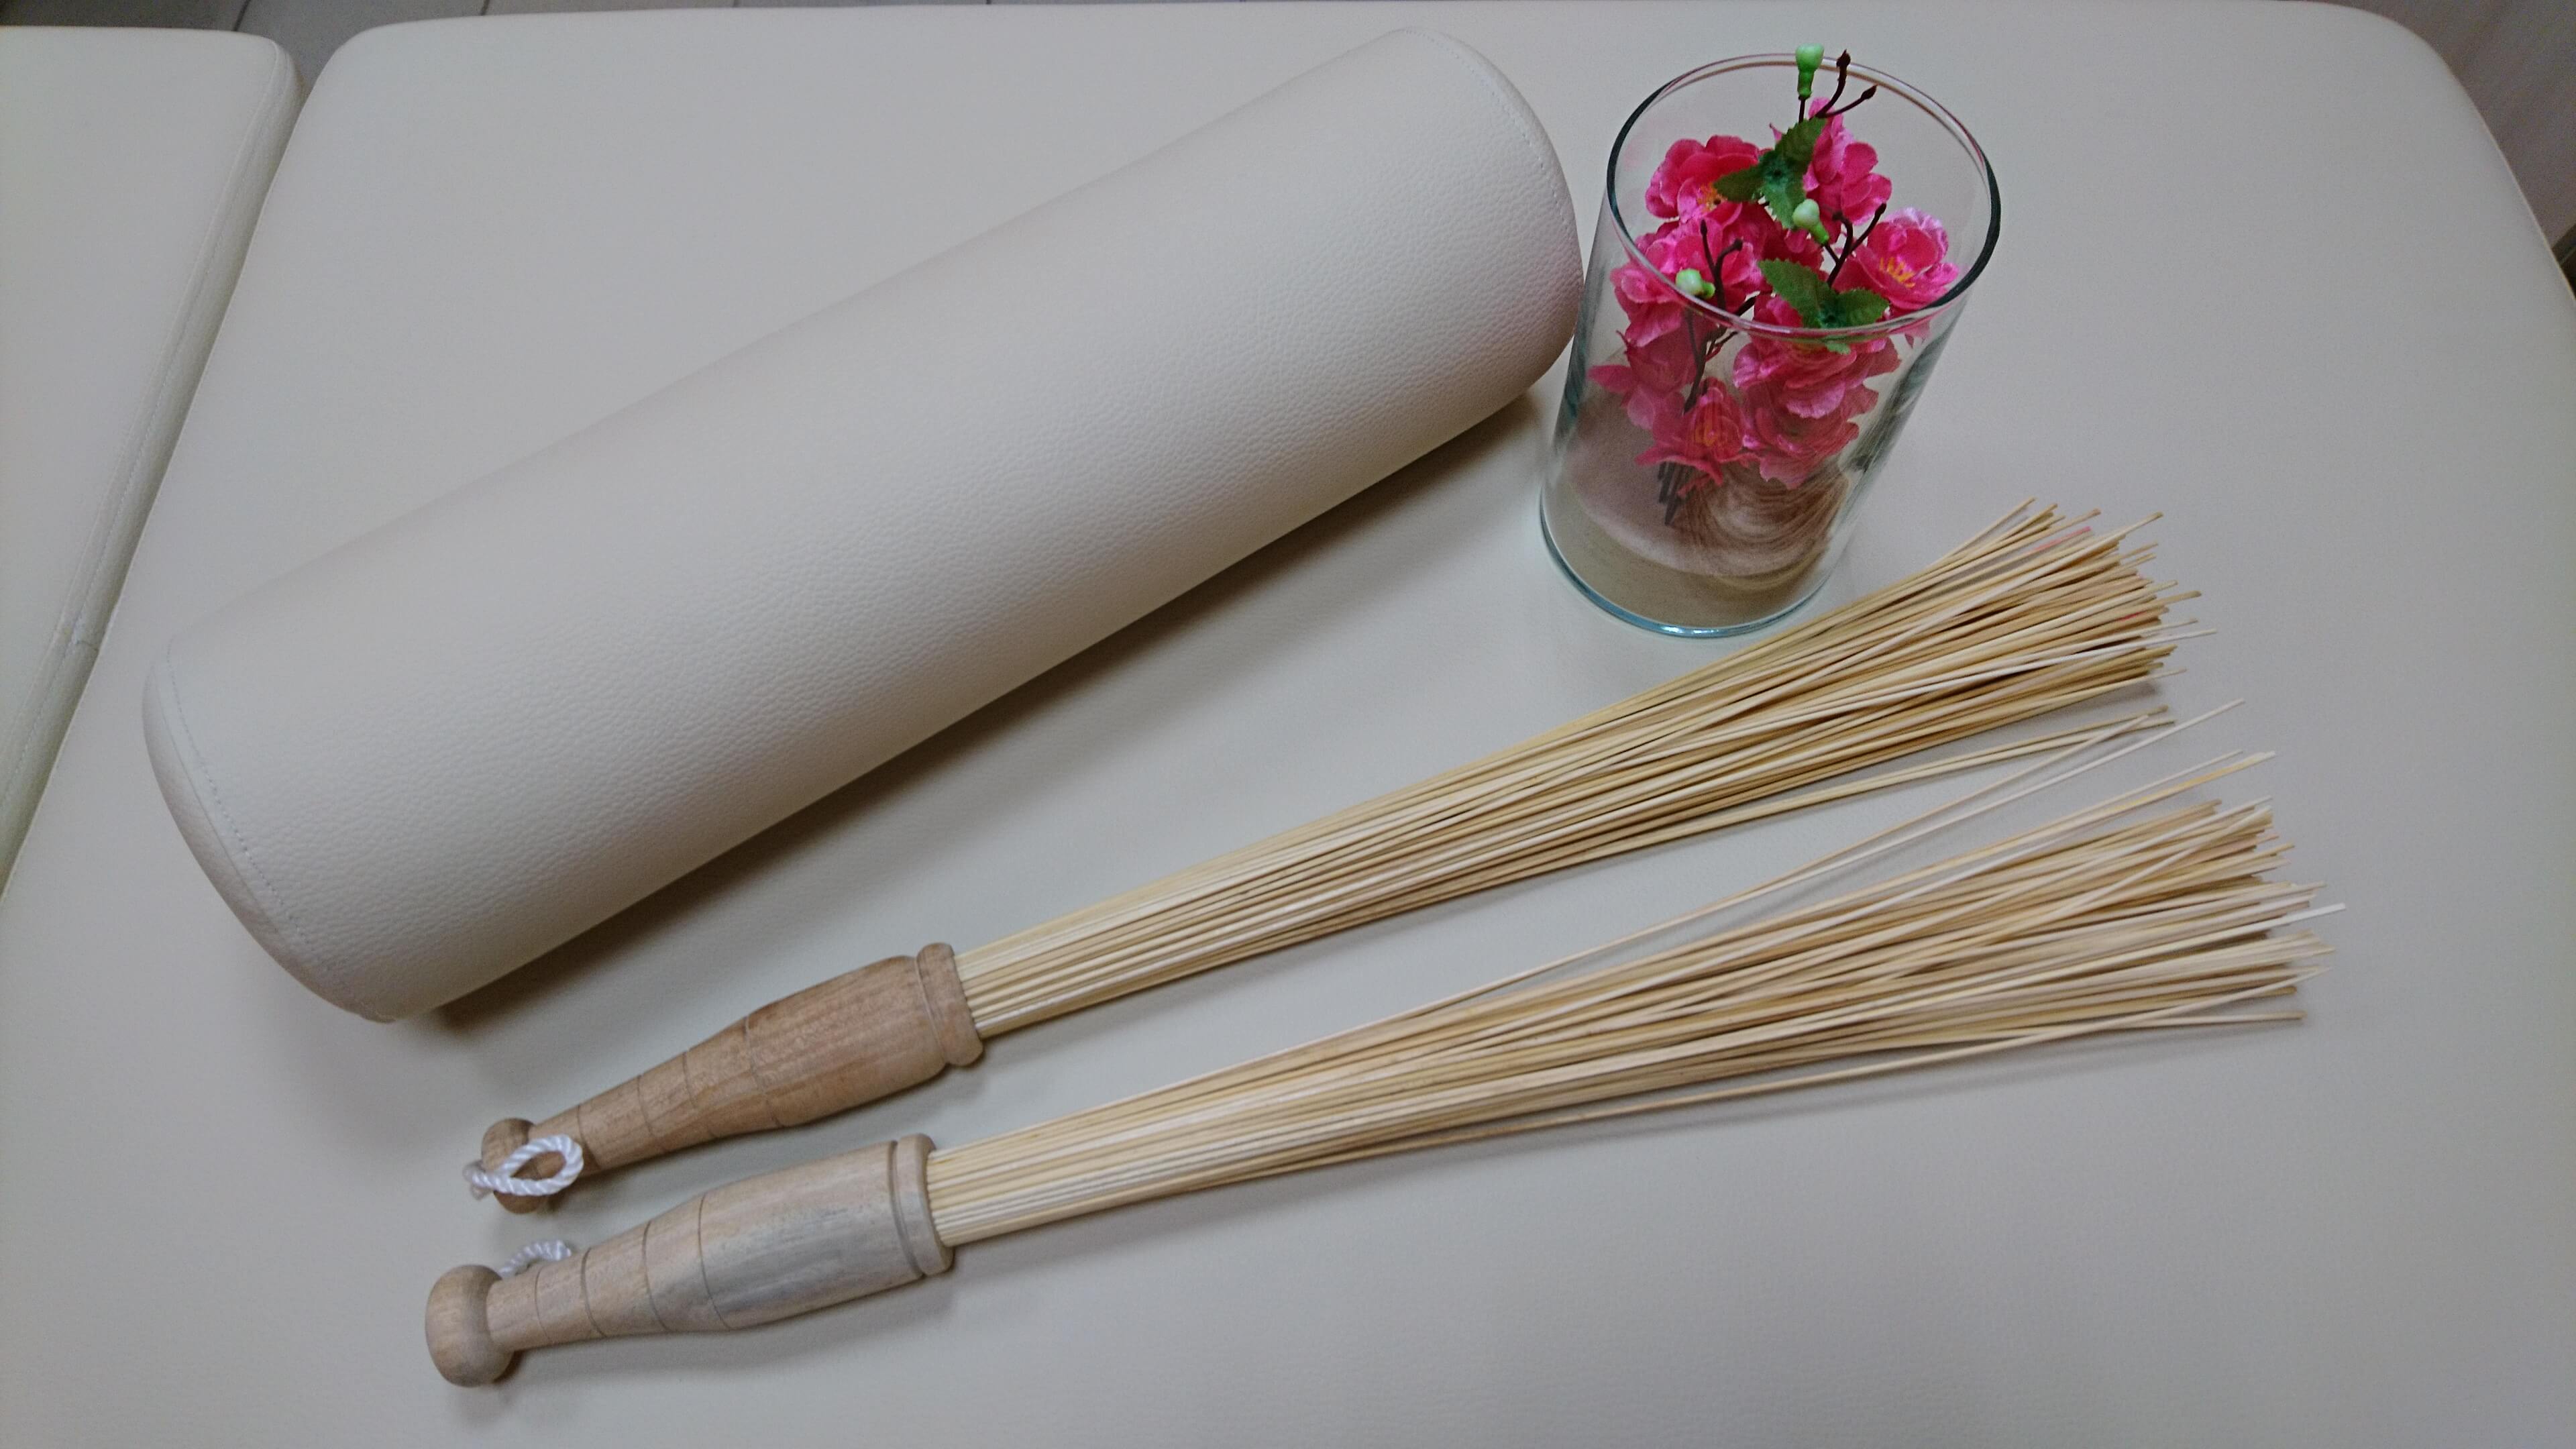 Бамбуковый веник для бани: как им пользоваться и проводить массаж